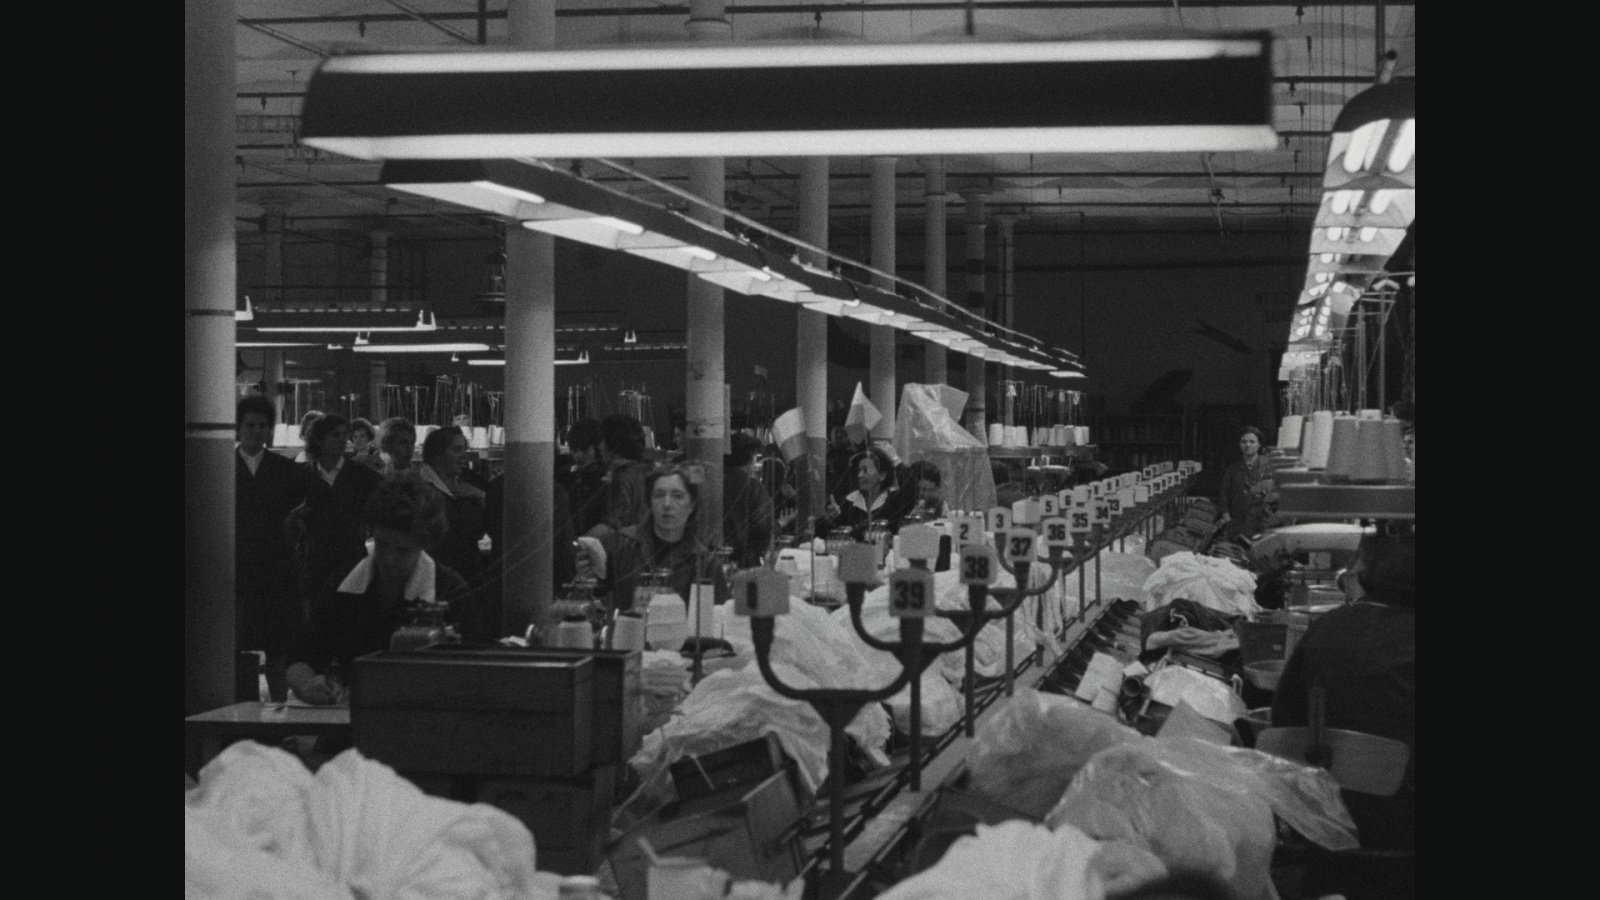 rus: стара фотографія швейної фабрики, справа машини, зліва купа жінок